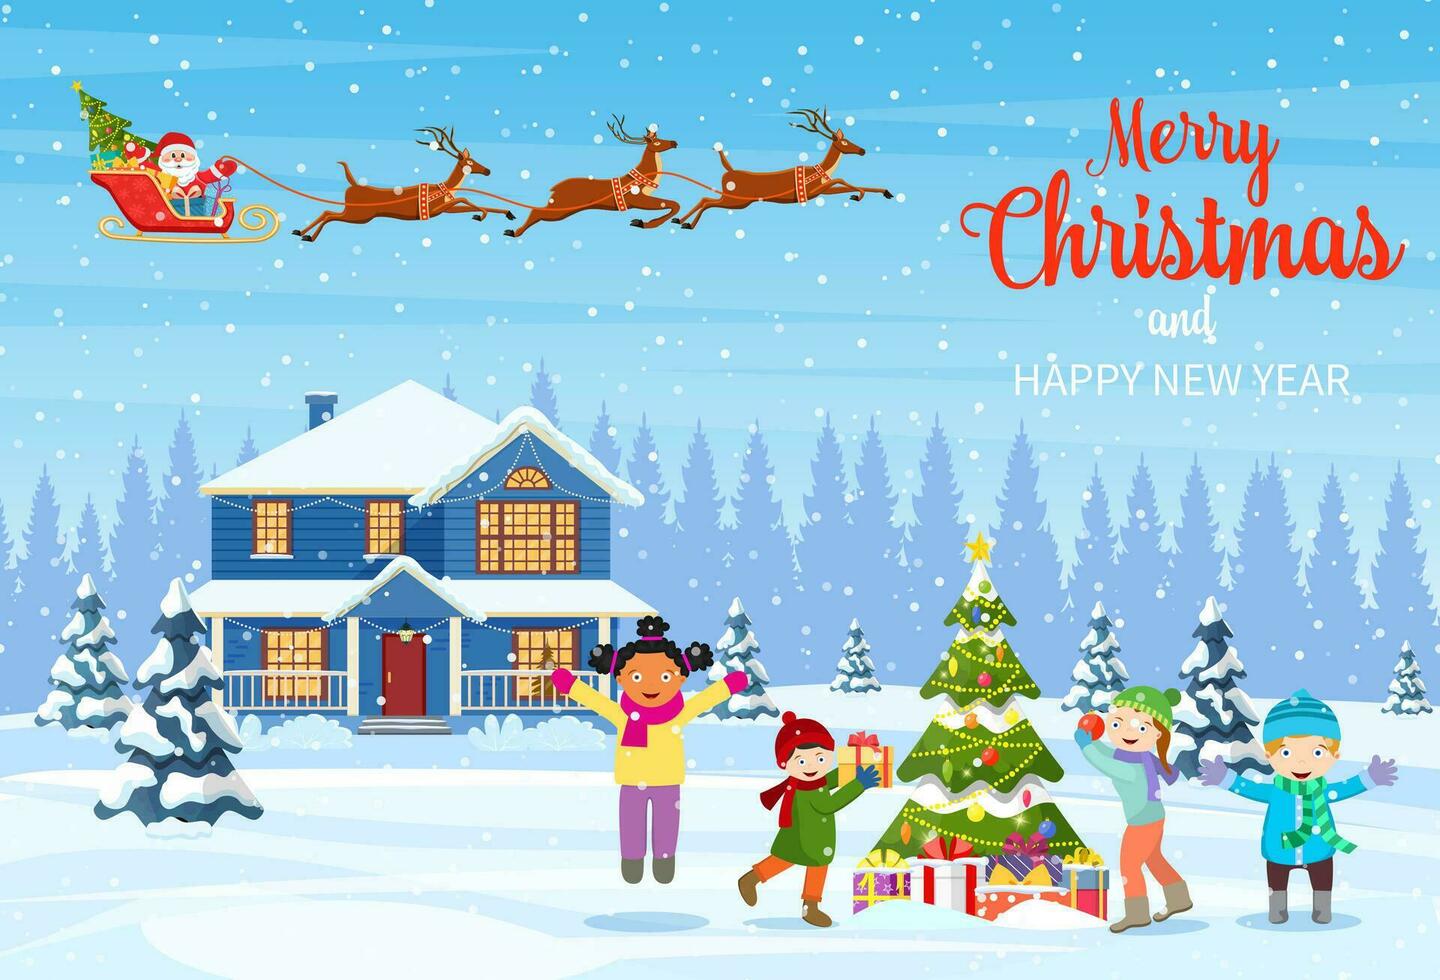 contento nuevo año y alegre Navidad saludo tarjeta. Navidad paisaje. niños decorando un Navidad árbol. invierno vacaciones. Papa Noel claus con ciervos en cielo. vector ilustración en plano estilo